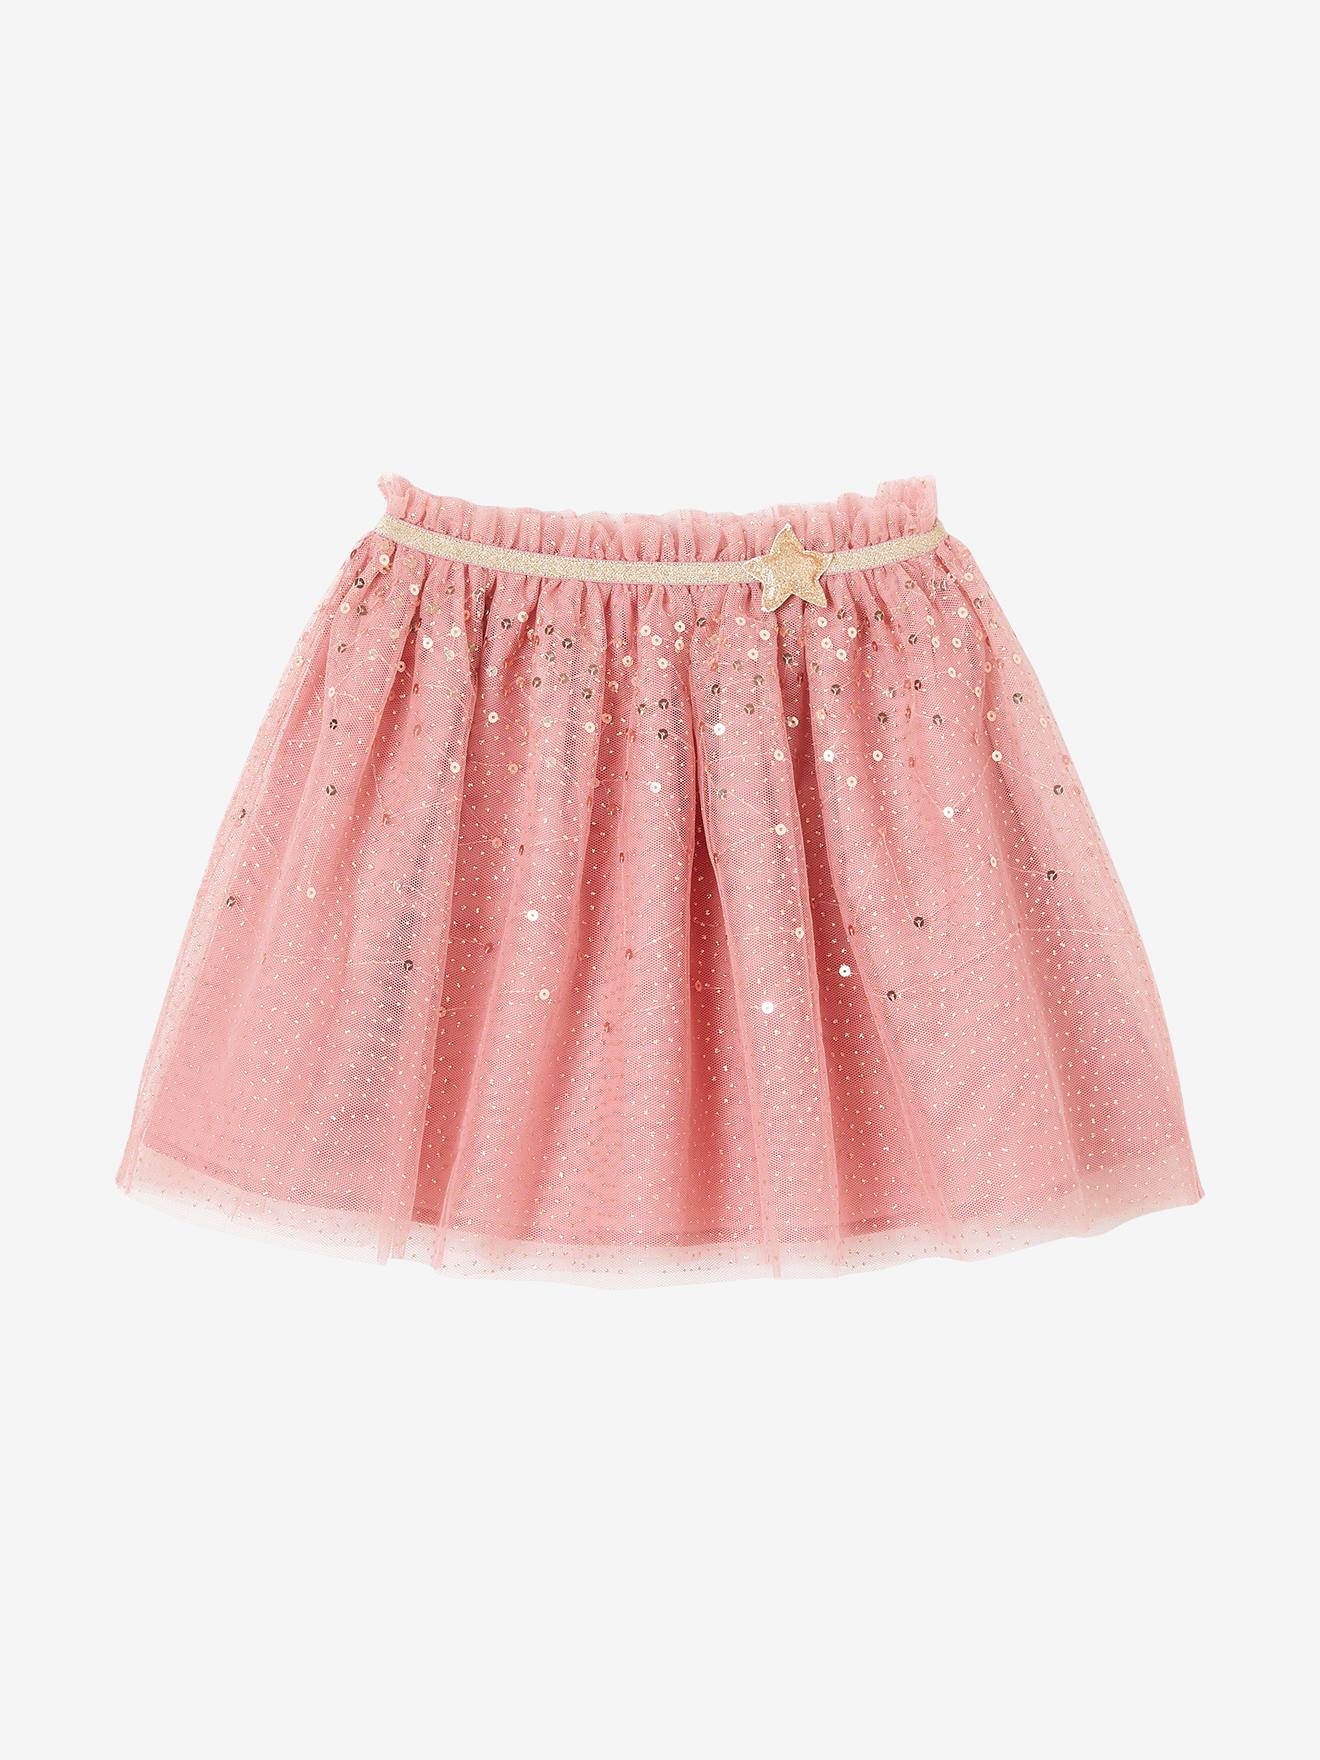 Falda larga tipo enagua de tul irisado para niña rosa rosa pálido -  Vertbaudet